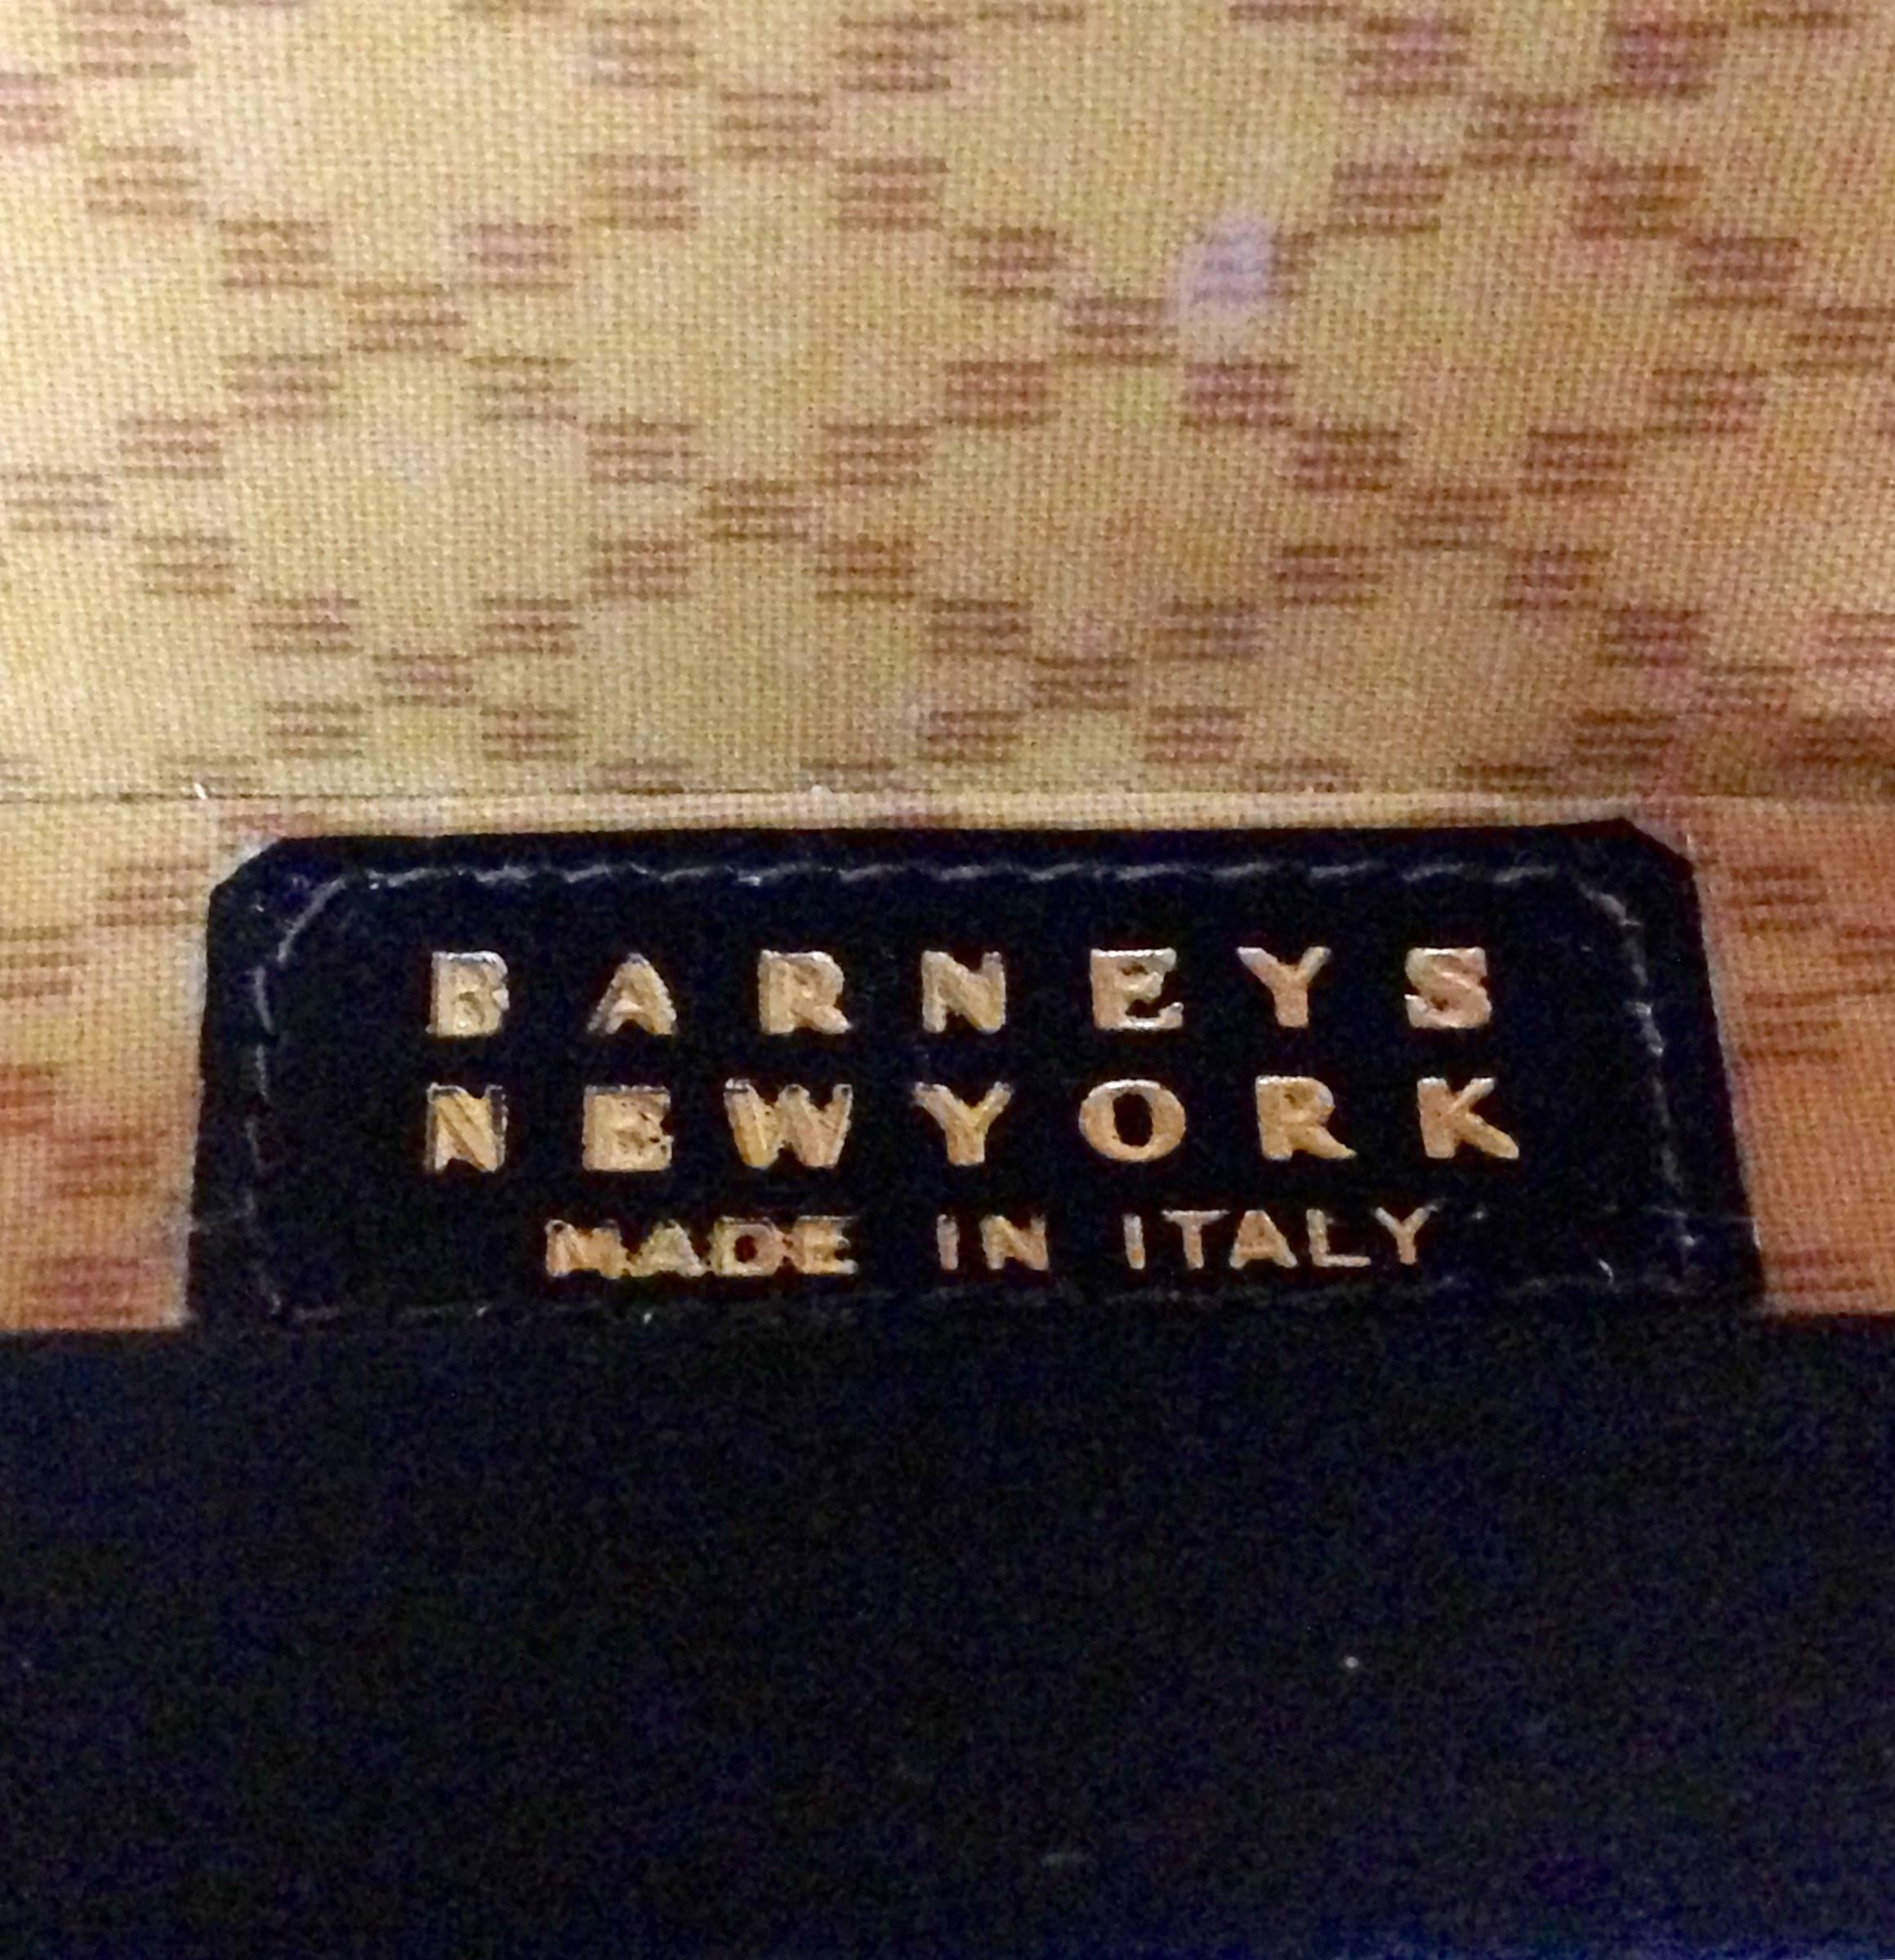 1950s train case